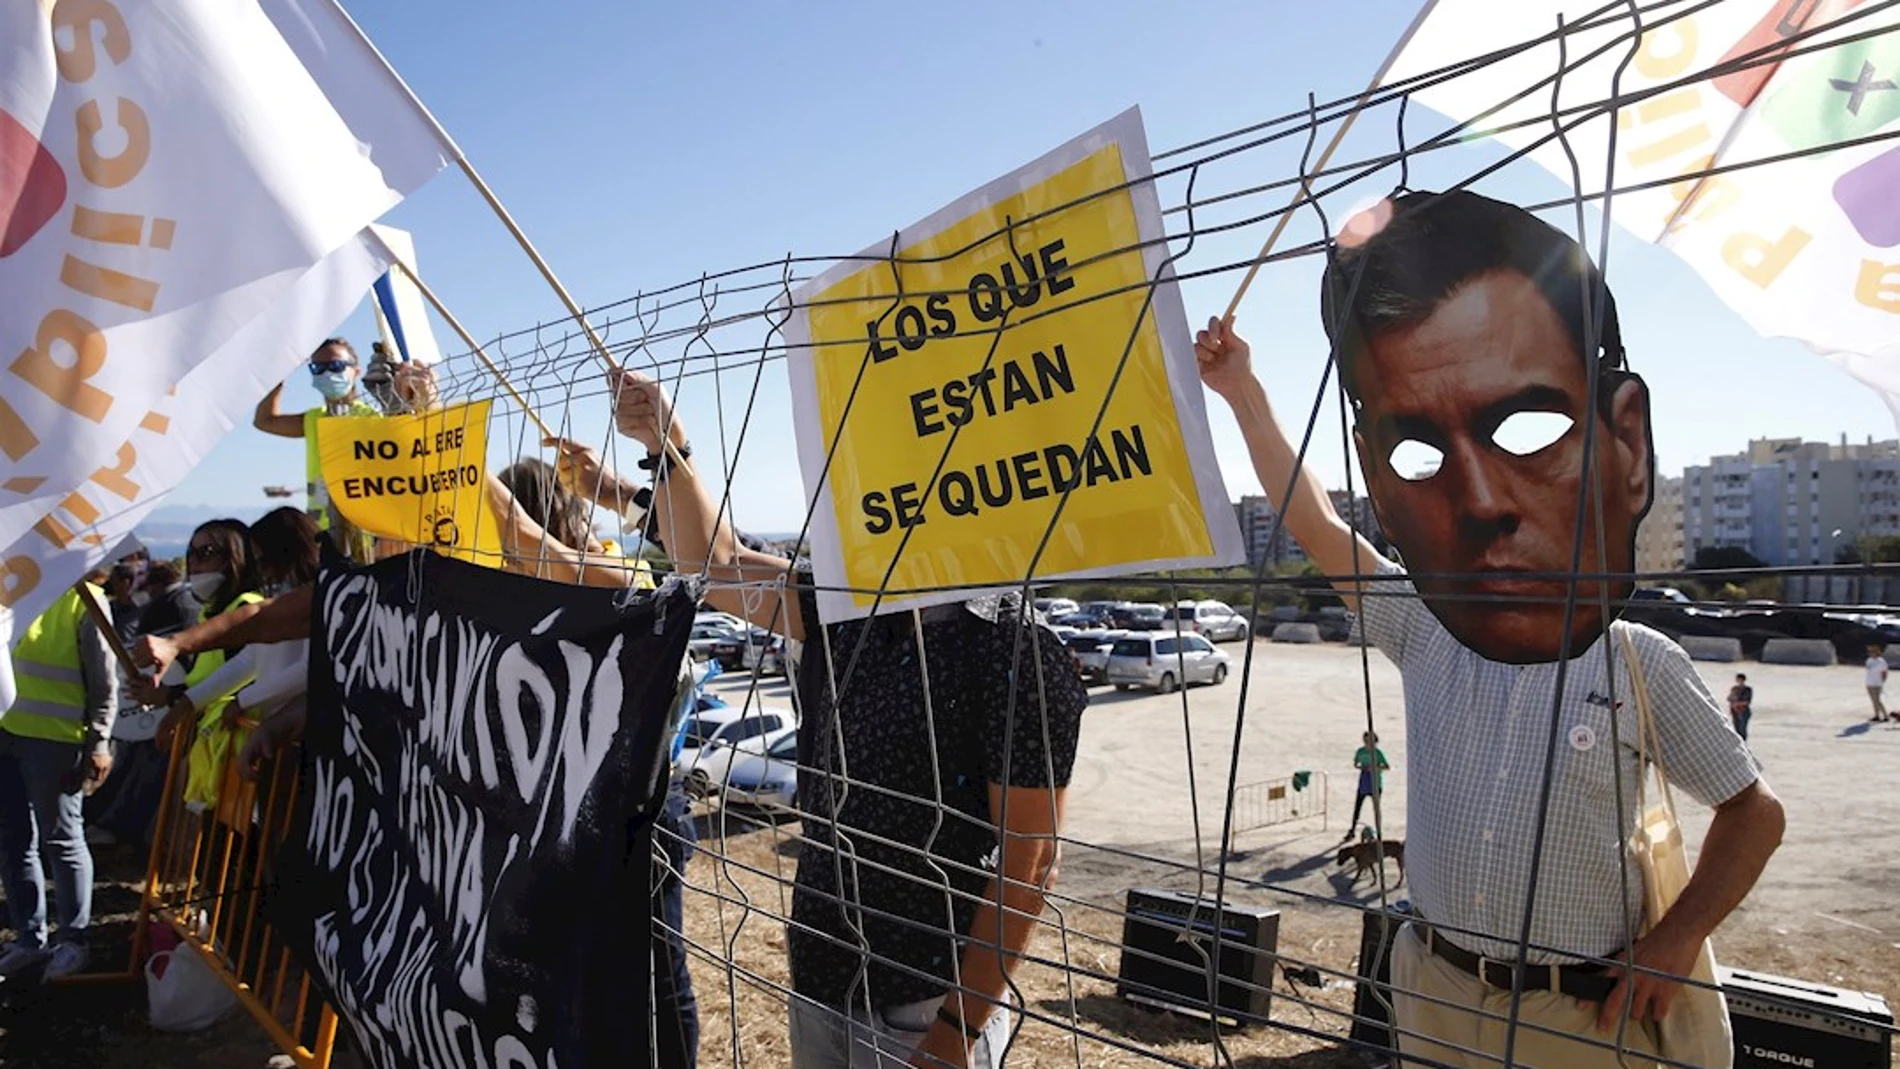  En la imagen una careta del presidente del Gobierno, Pedro Sánchez es utilizada durante la protesta